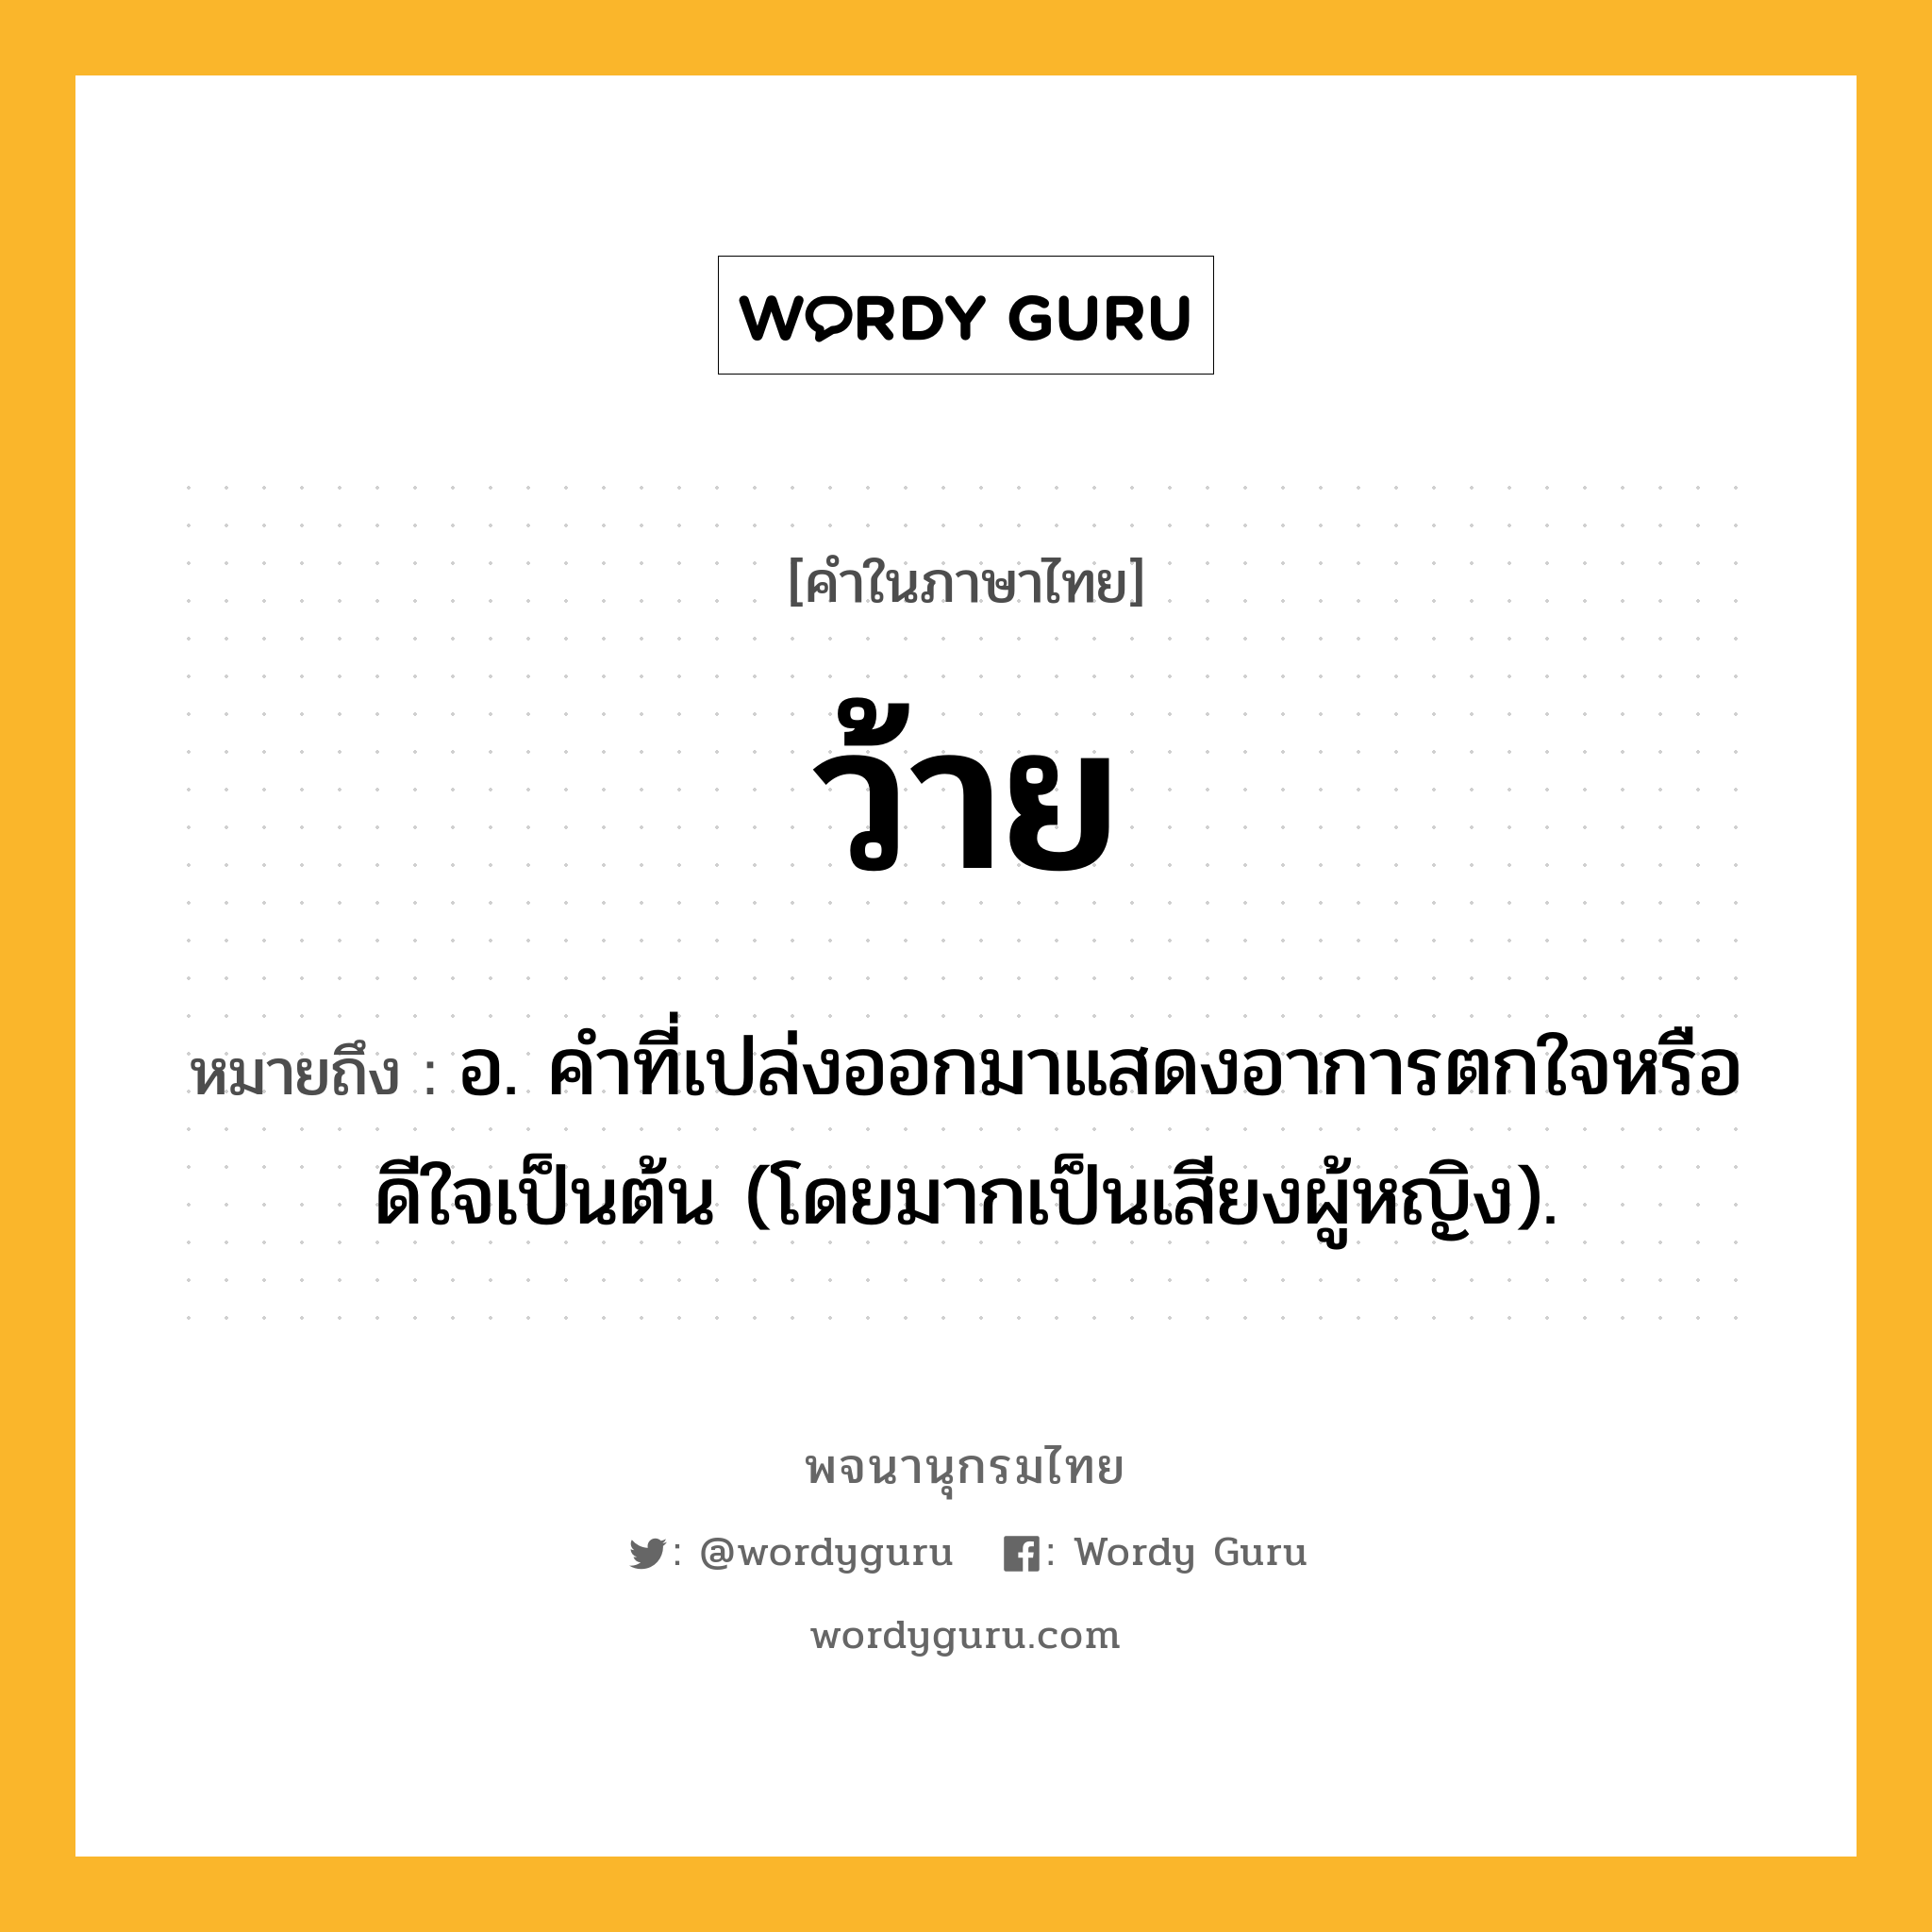 ว้าย ความหมาย หมายถึงอะไร?, คำในภาษาไทย ว้าย หมายถึง อ. คําที่เปล่งออกมาแสดงอาการตกใจหรือดีใจเป็นต้น (โดยมากเป็นเสียงผู้หญิง).